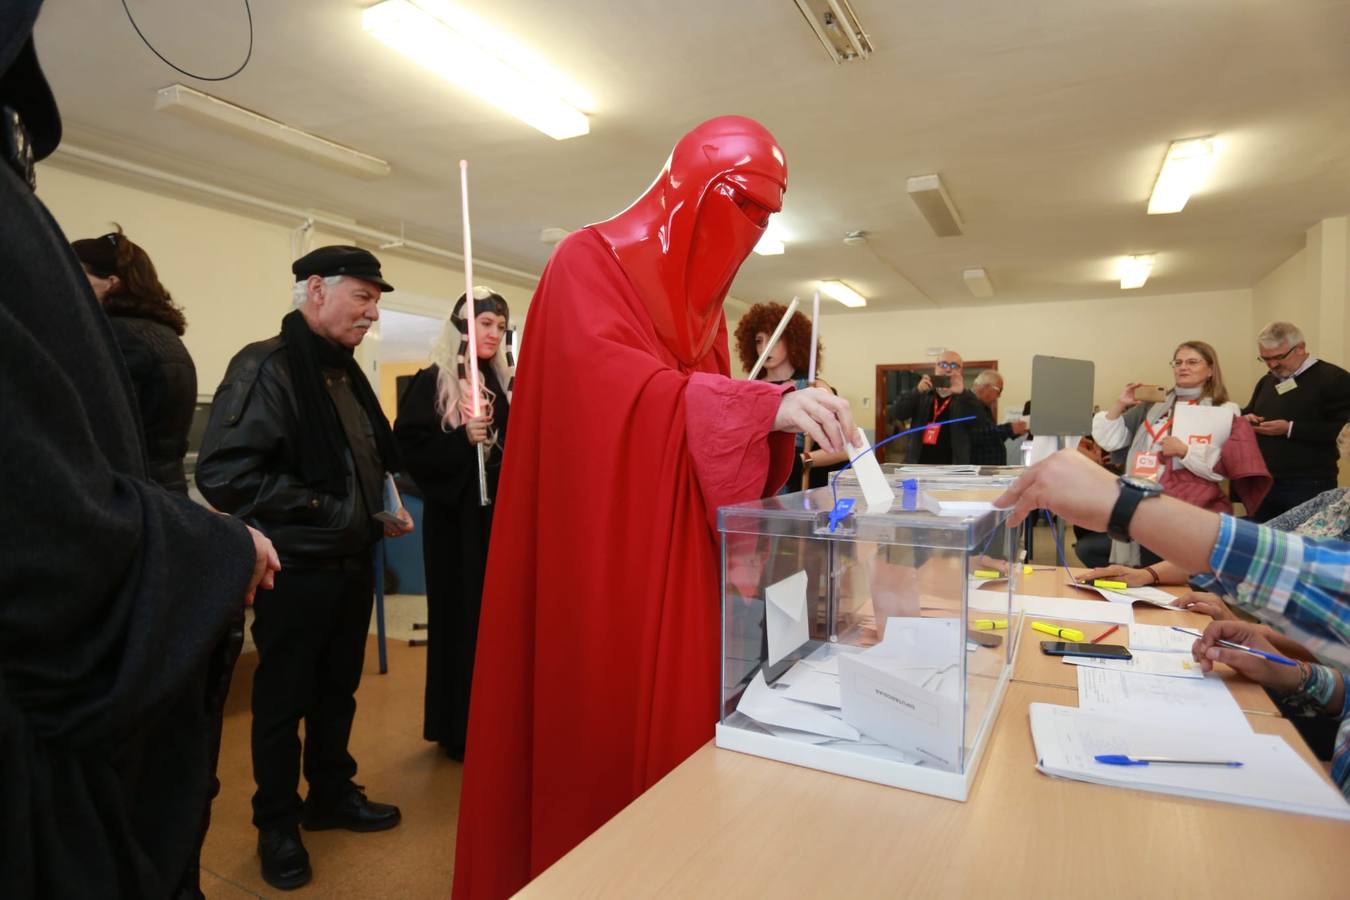 Fans de «Star Wars» votan disfrazados de personajes de la saga. Un grupo de fans han acudido hoy a votar en Sevilla disfrazados de los personajes de las películas creadas por George Lucas, lo que ha sorprendido a la gente que se encontraba en el colegio electoral